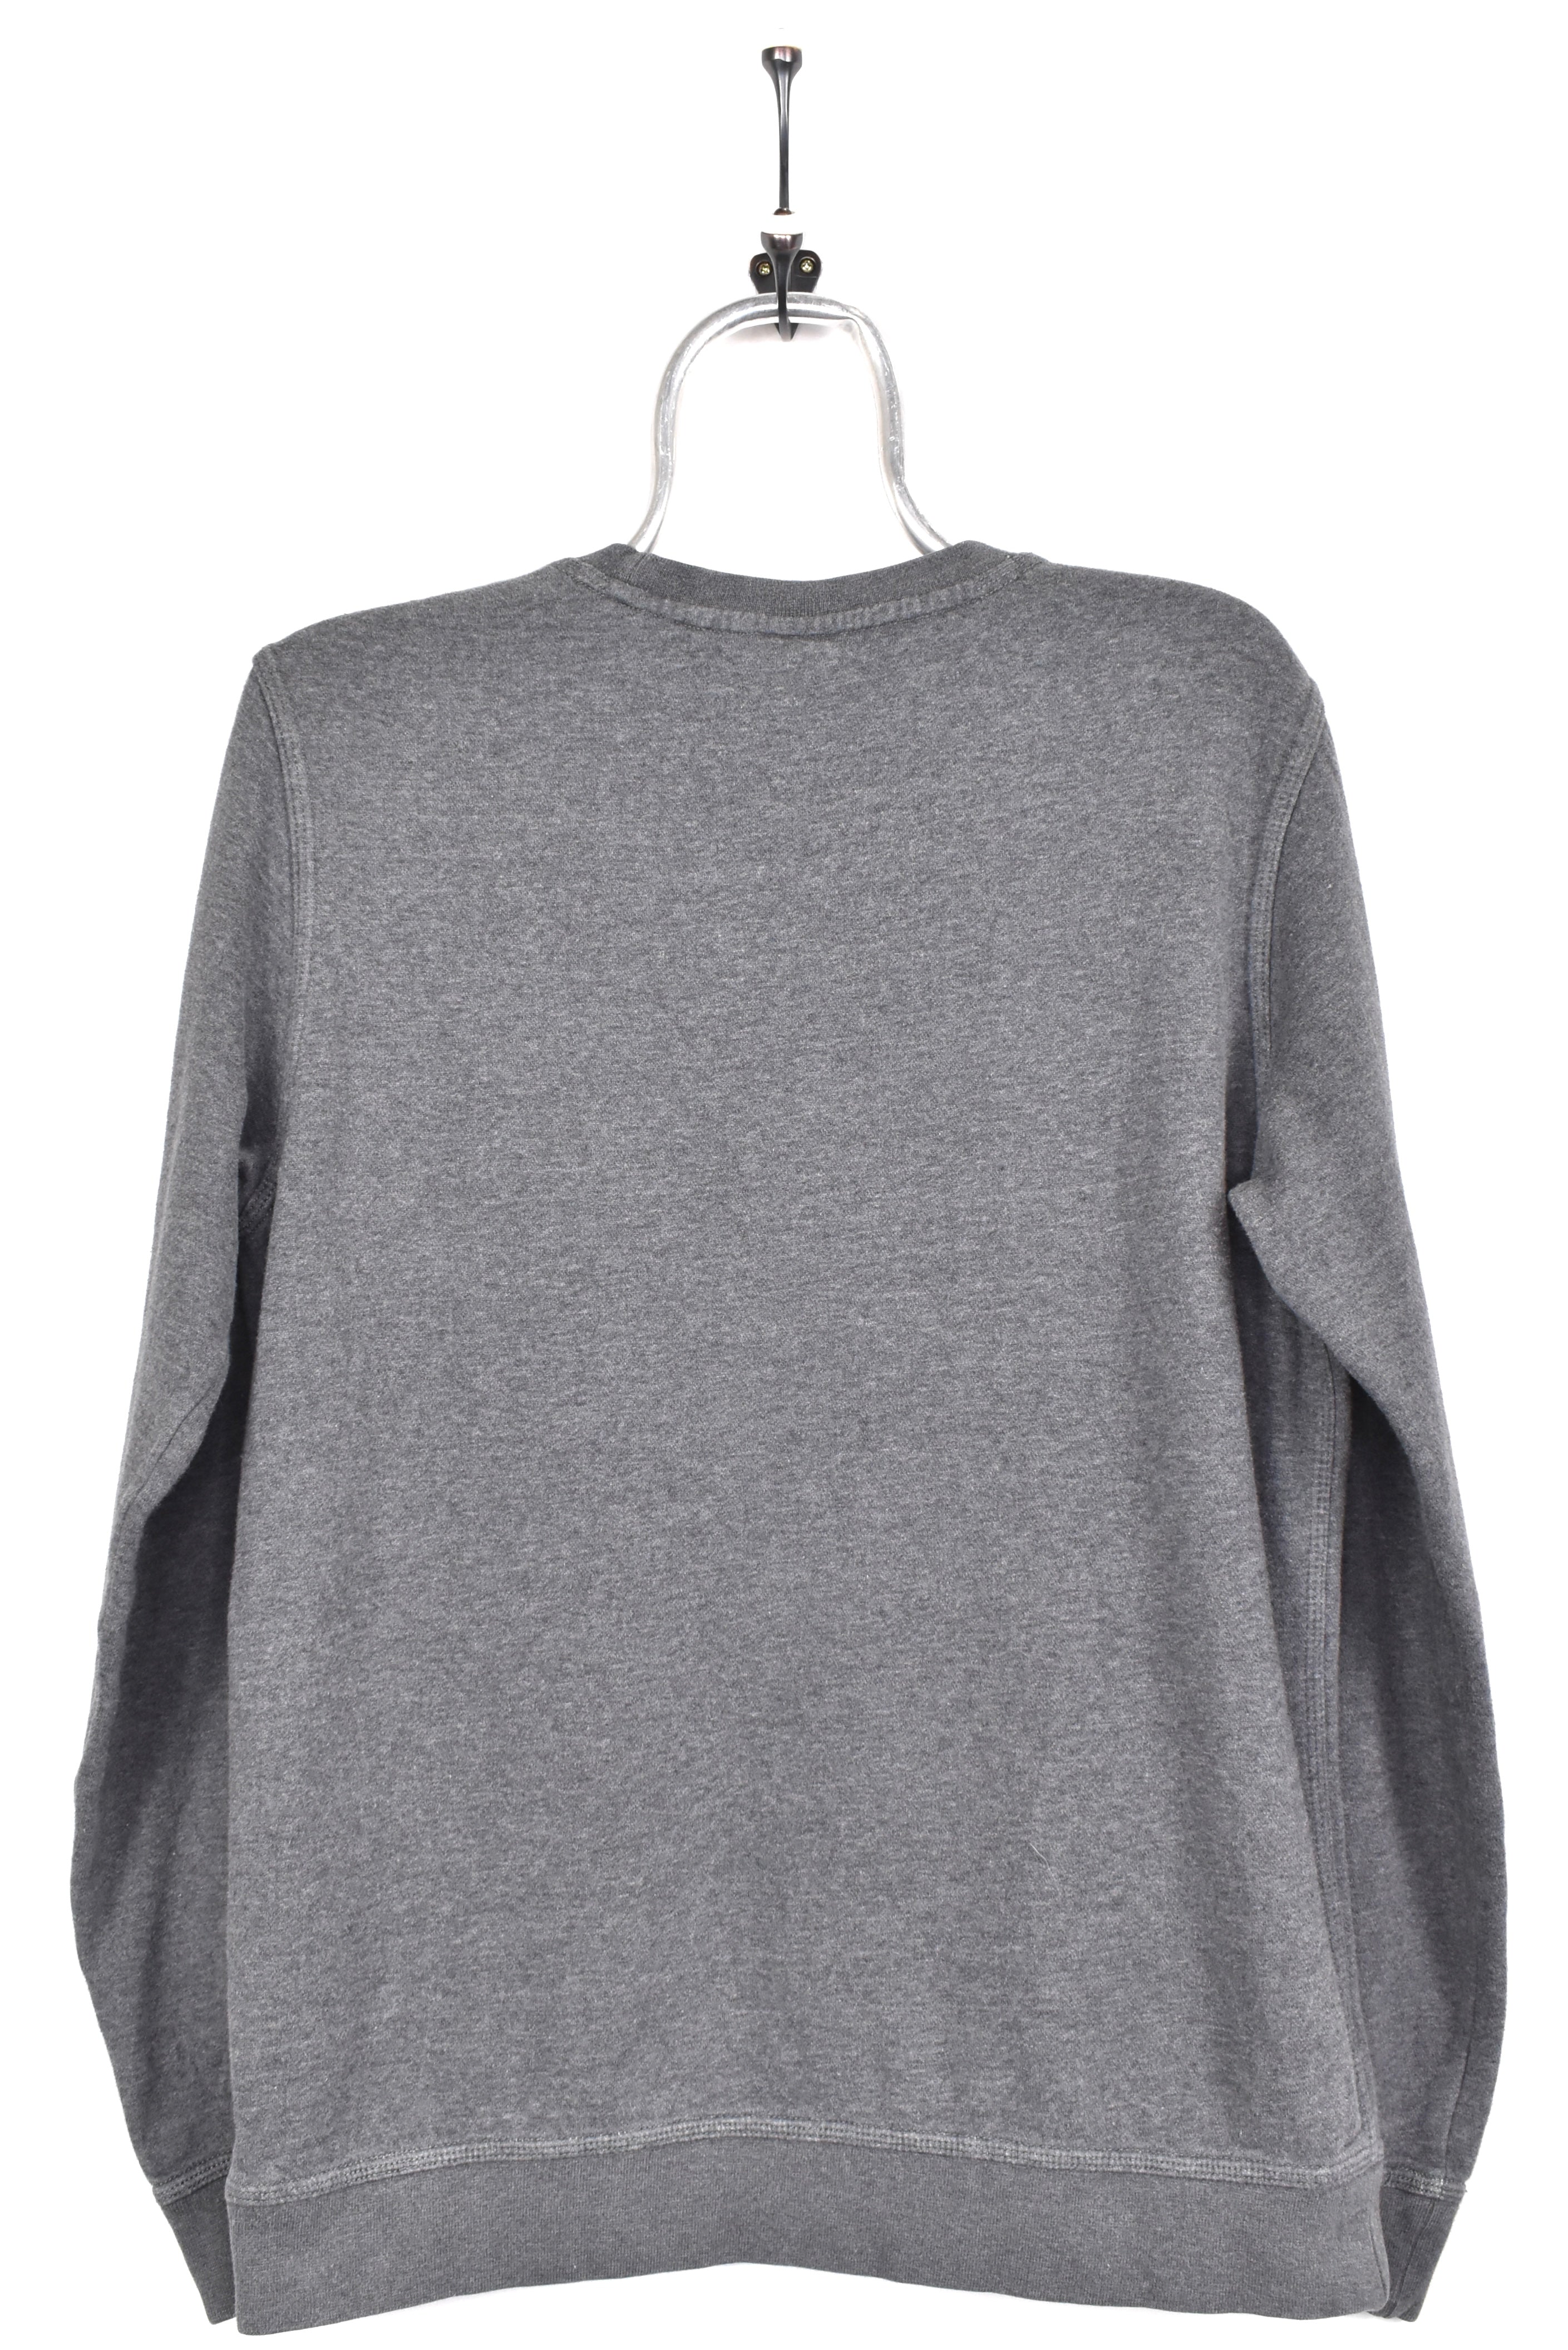 Vintage Nike sweatshirt, grey embroidered crewneck - AU M NIKE